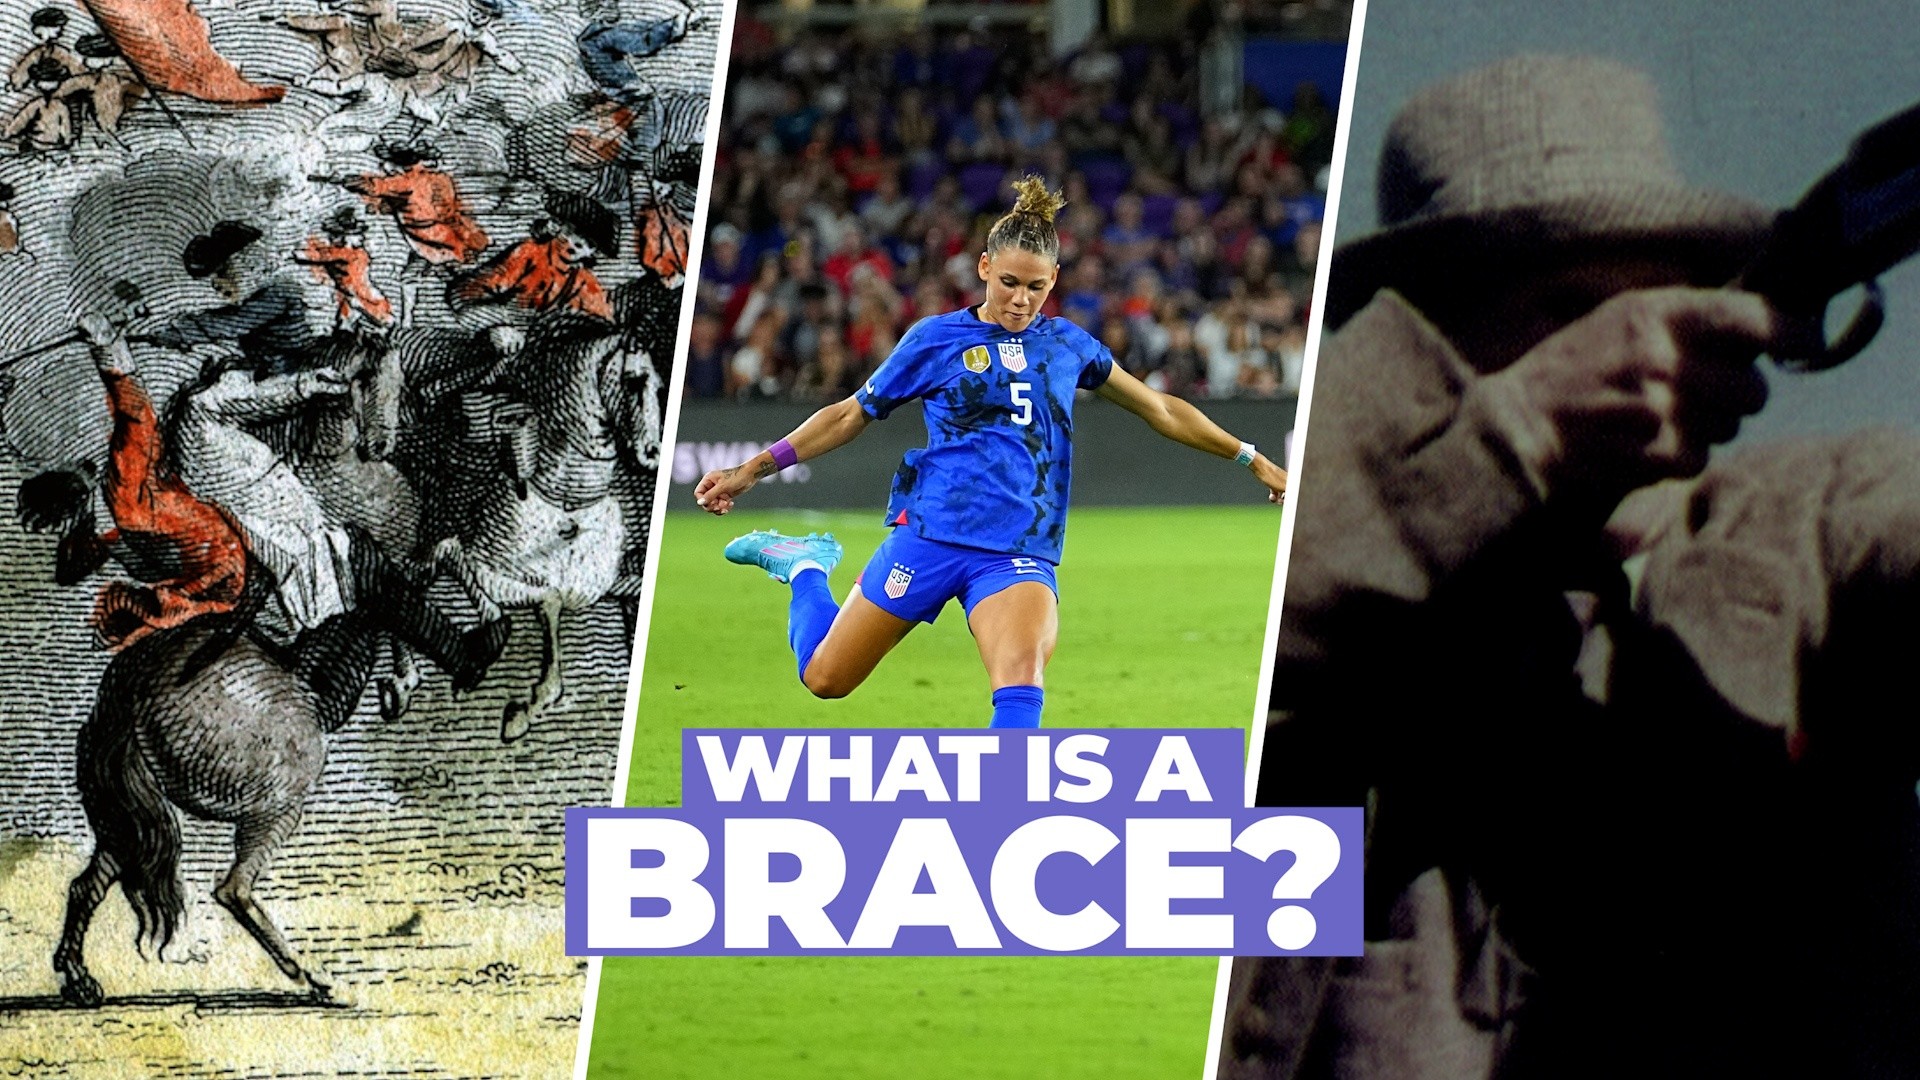 What is a brace in soccer?